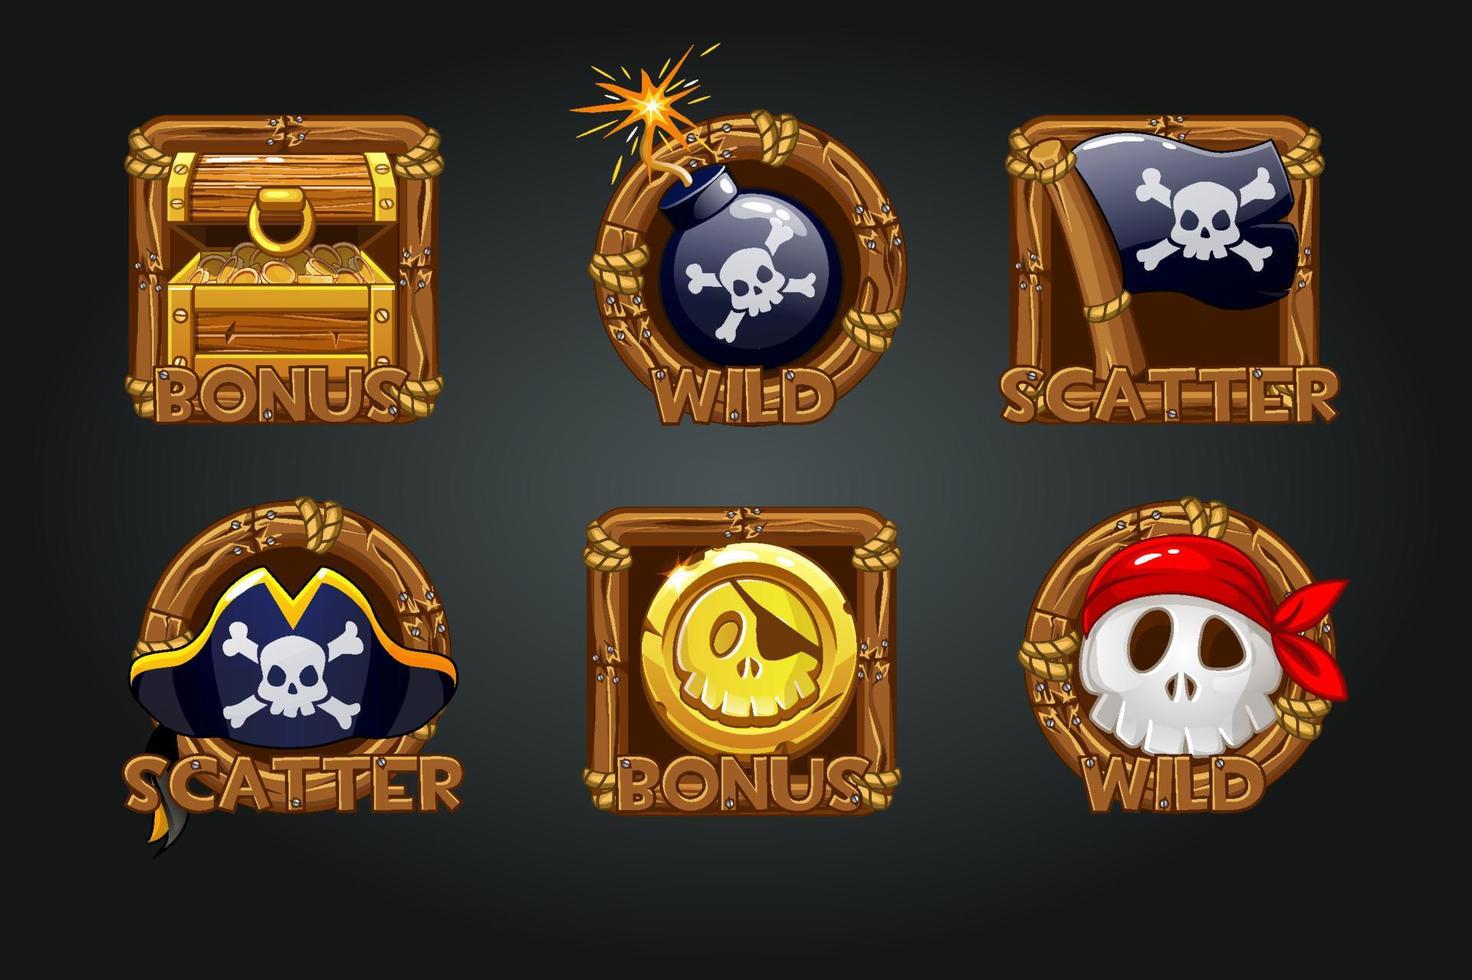 iconos piratas en marcos de madera para tragamonedas. iconos símbolos piratas, bonificación del tesoro, calavera, bandera, moneda, calavera. vector